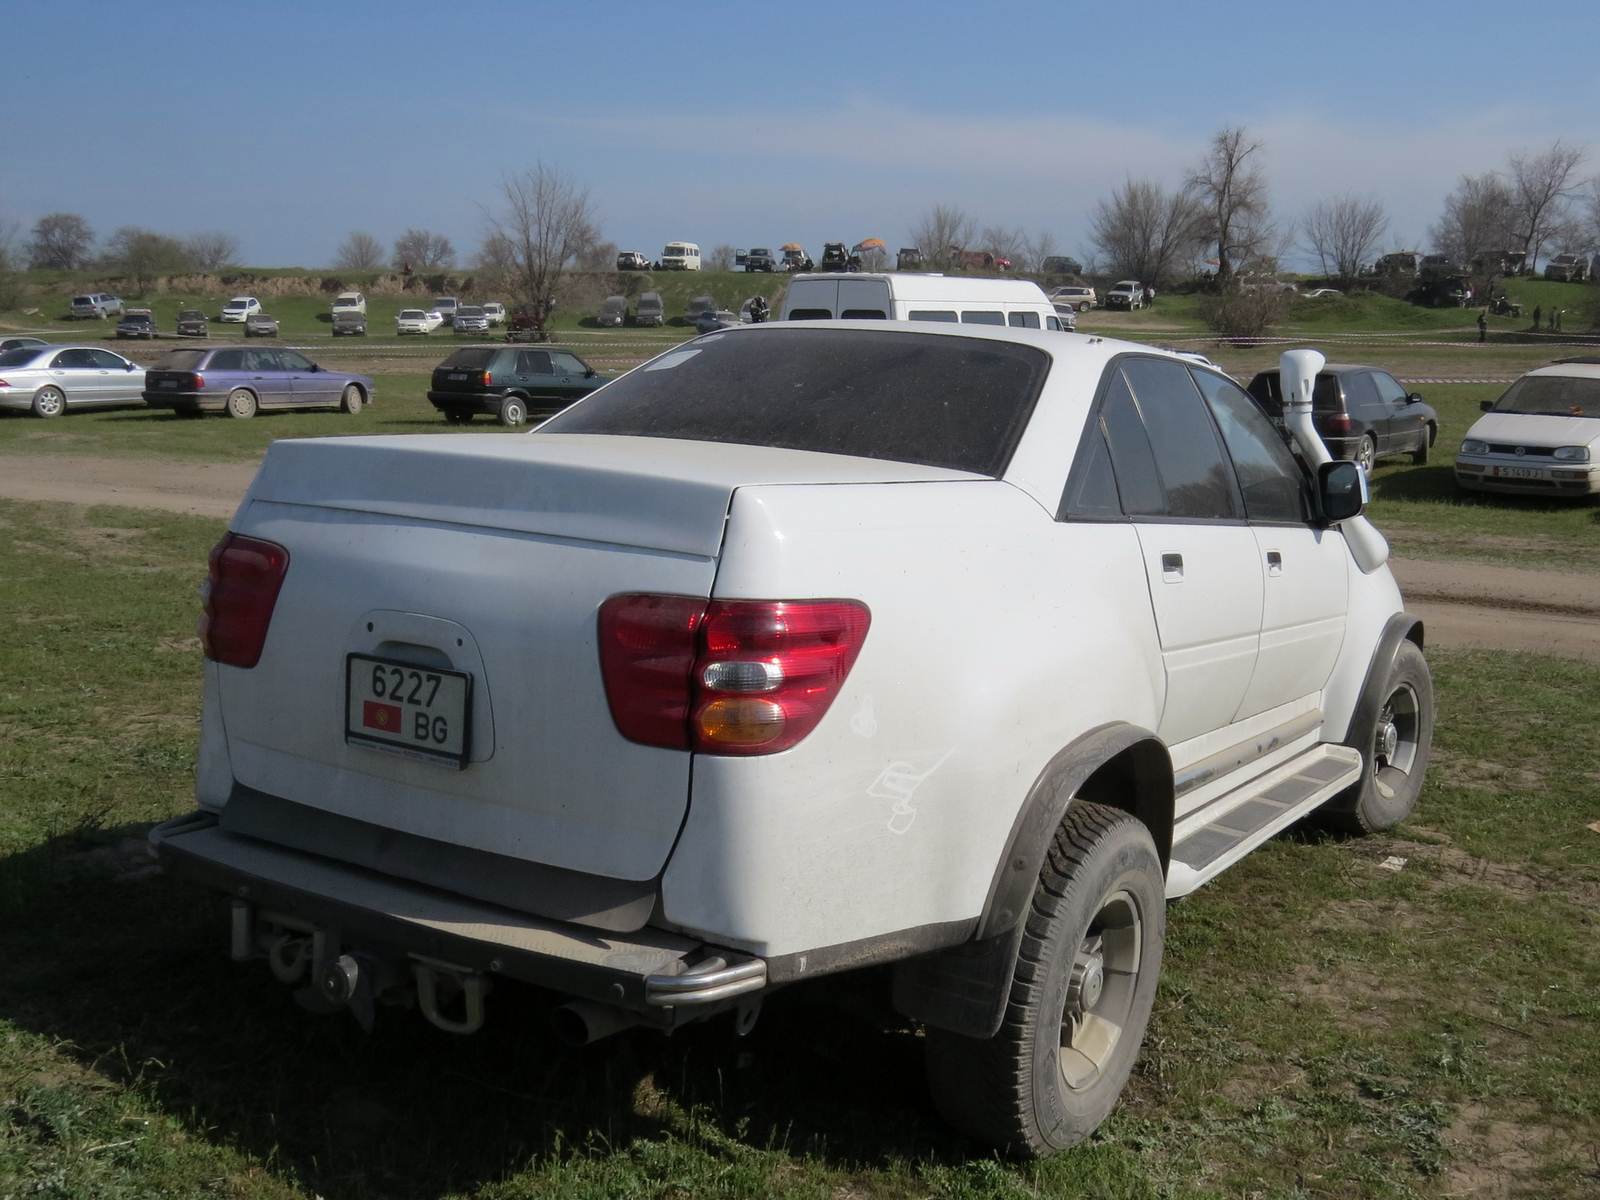 2000 (?). САМАВТО. Кыргызстан. Бишкек. Автор неизвестен. Агрегатная база Opel Omega